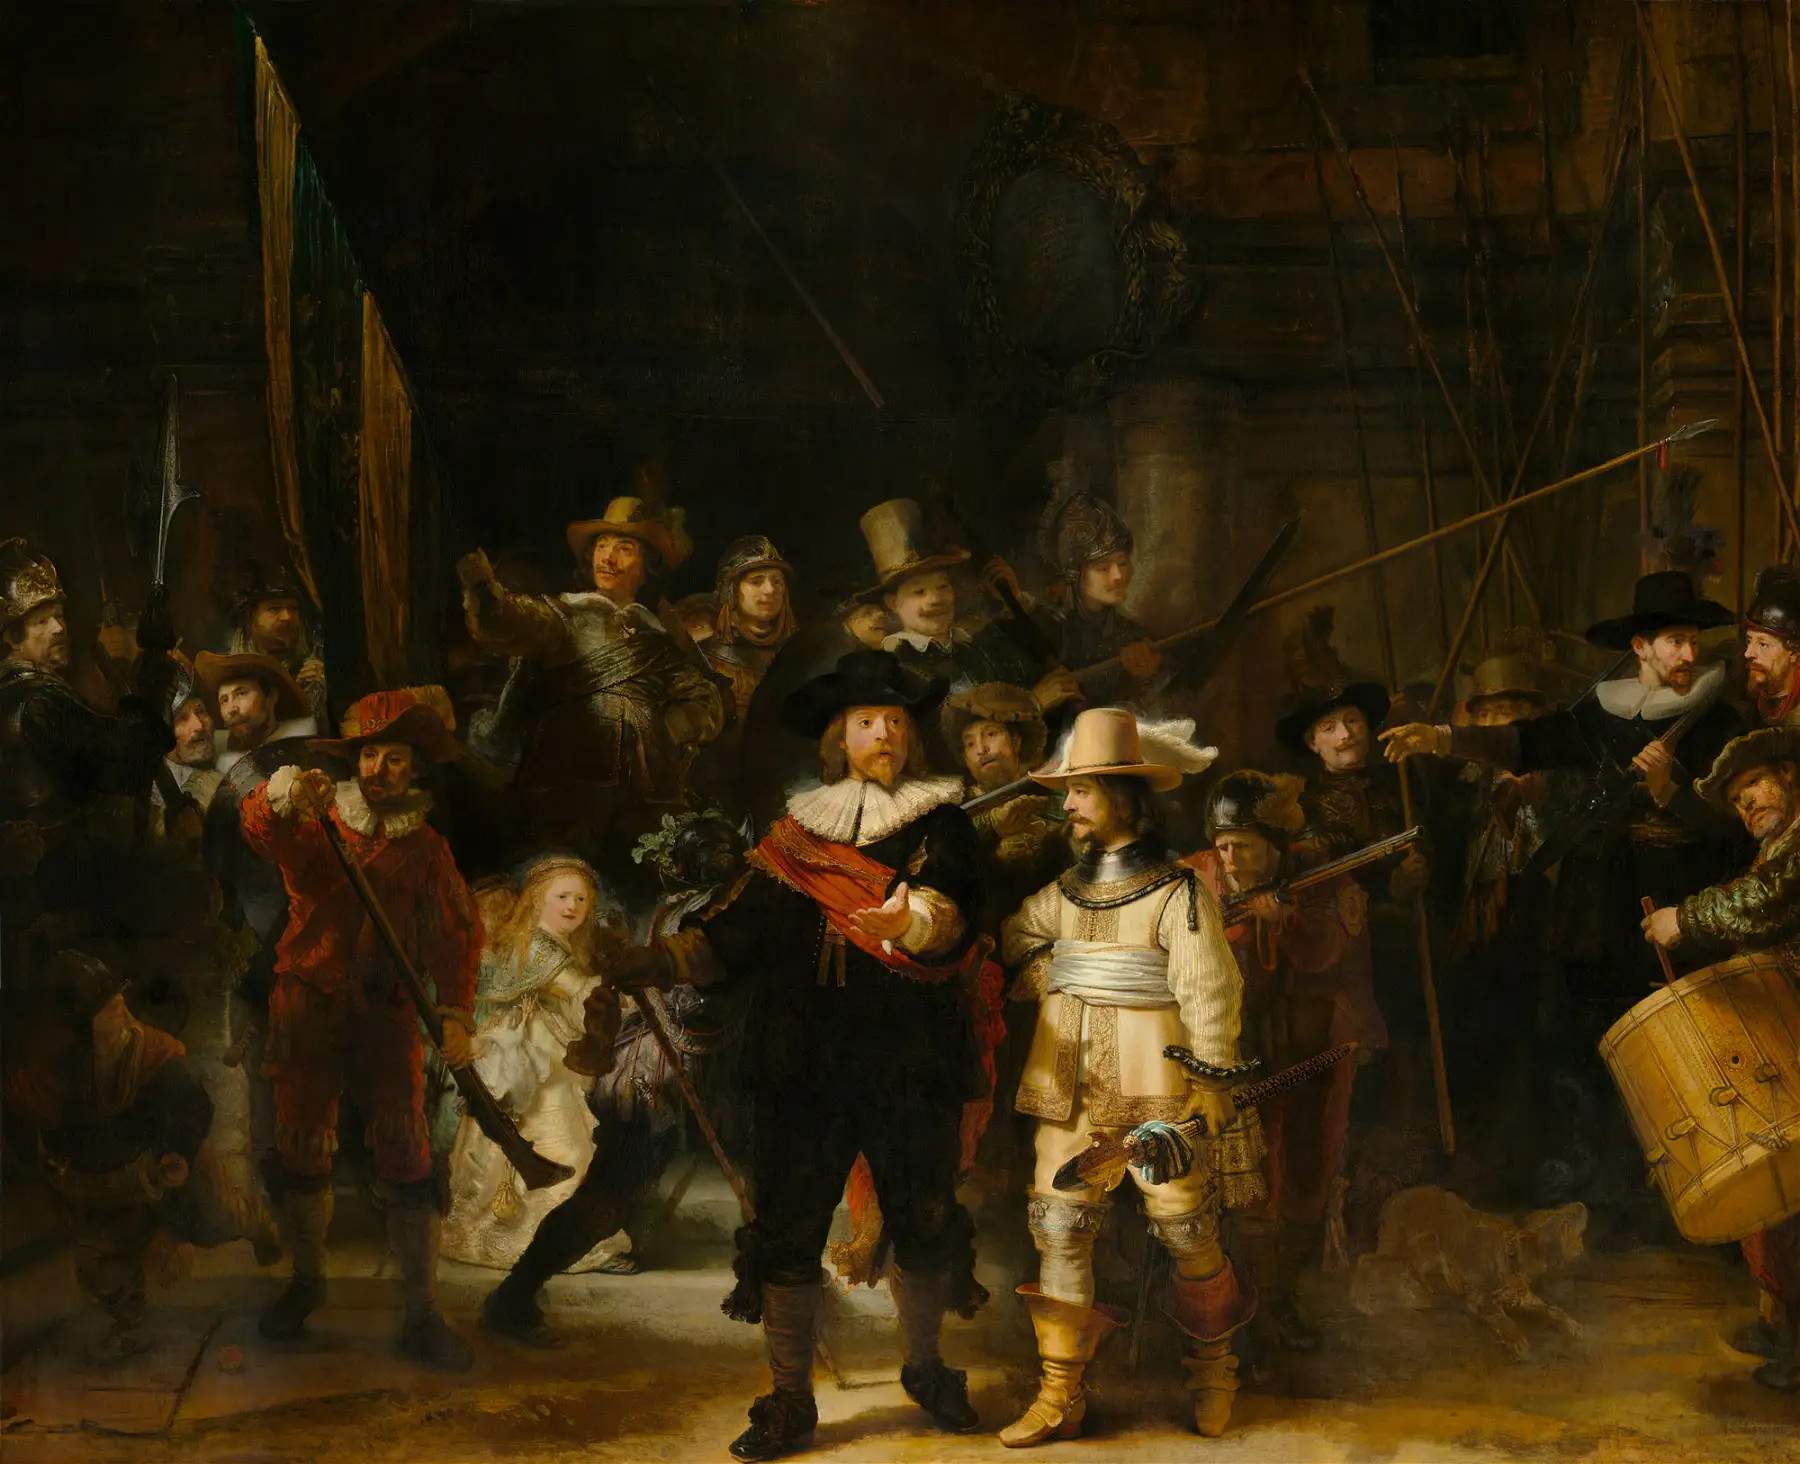 Nella Ronda di notte Rembrandt applicò uno strato con piombo per proteggere l'opera dall'umidità